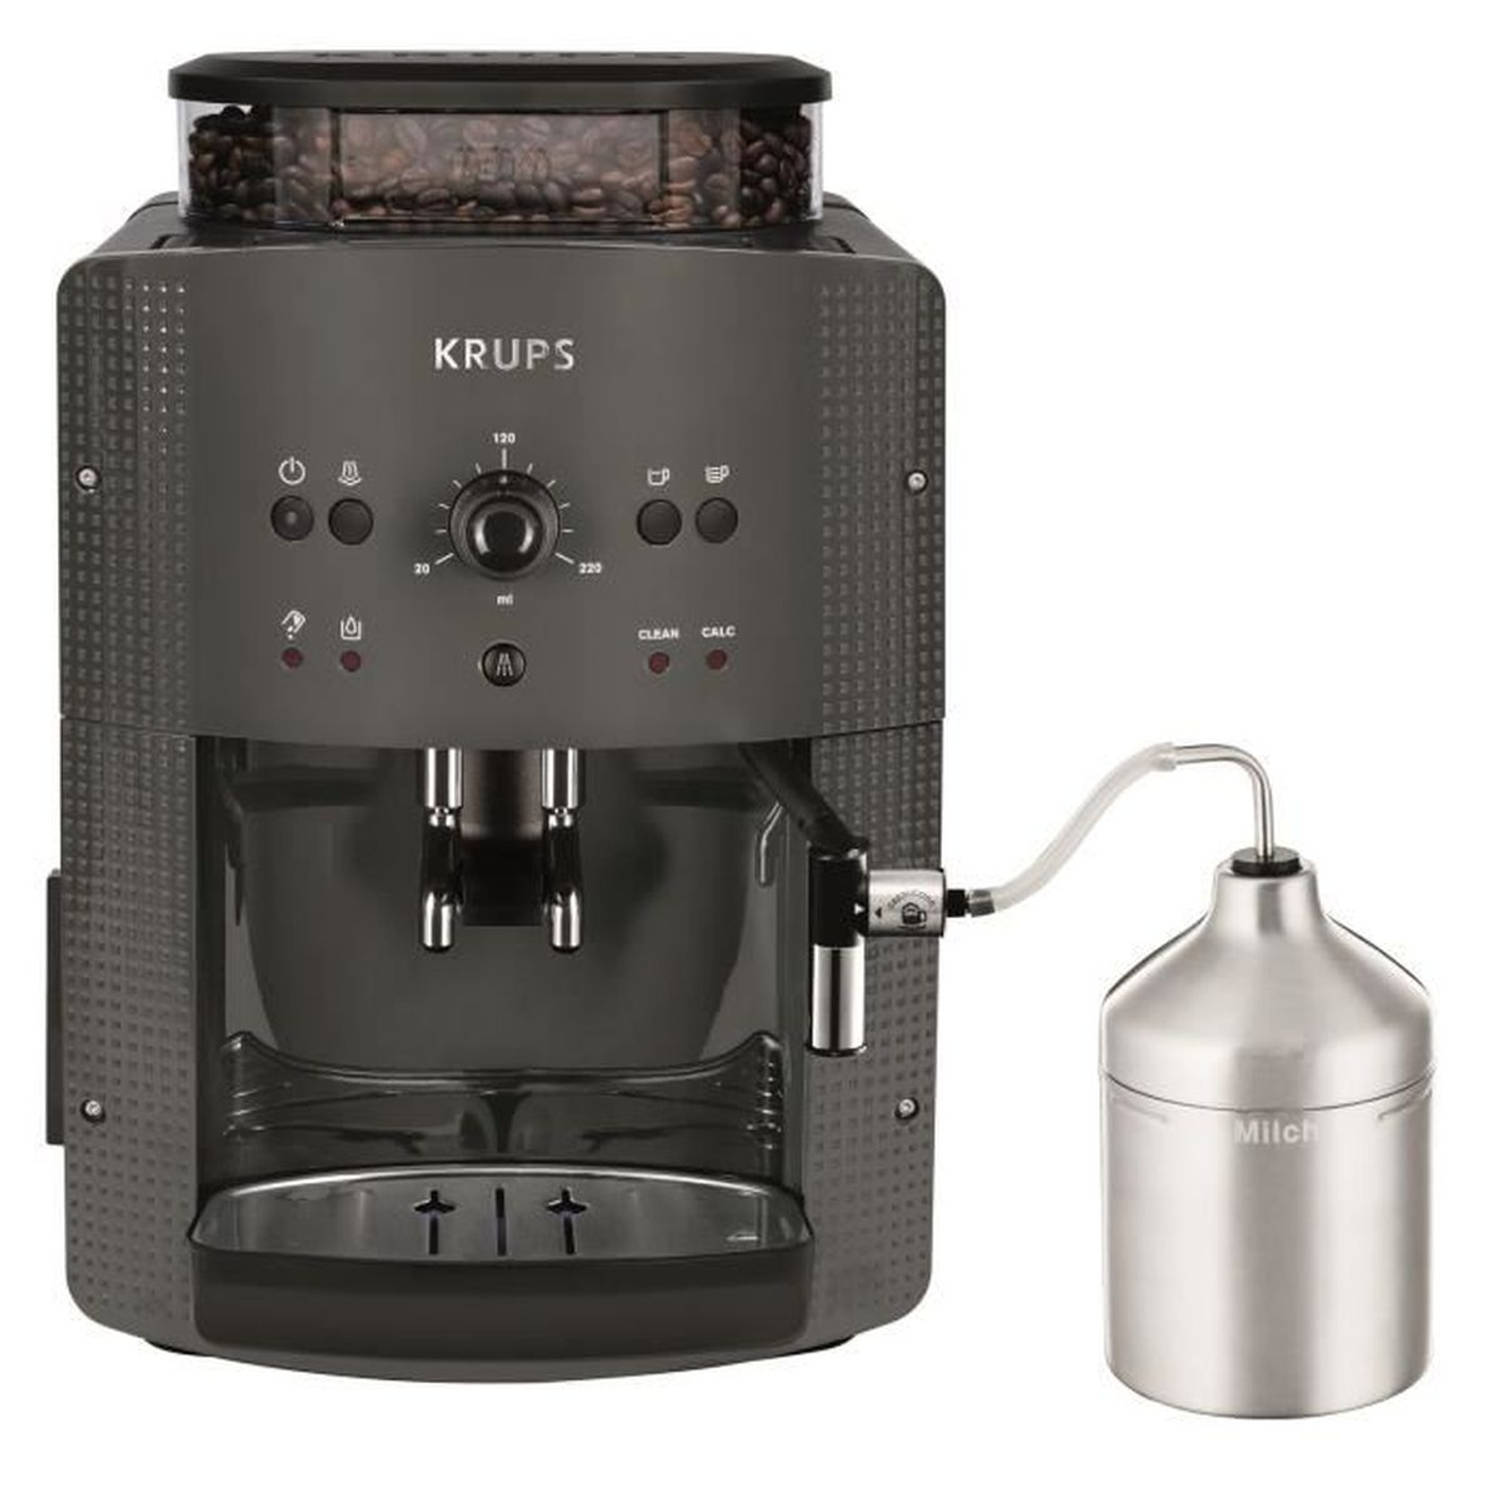 KRUPS Koffiezetapparaat met bonenmaler, Melkopschuimer, 2 espressokoppen tegelijk, Essential grijs Y